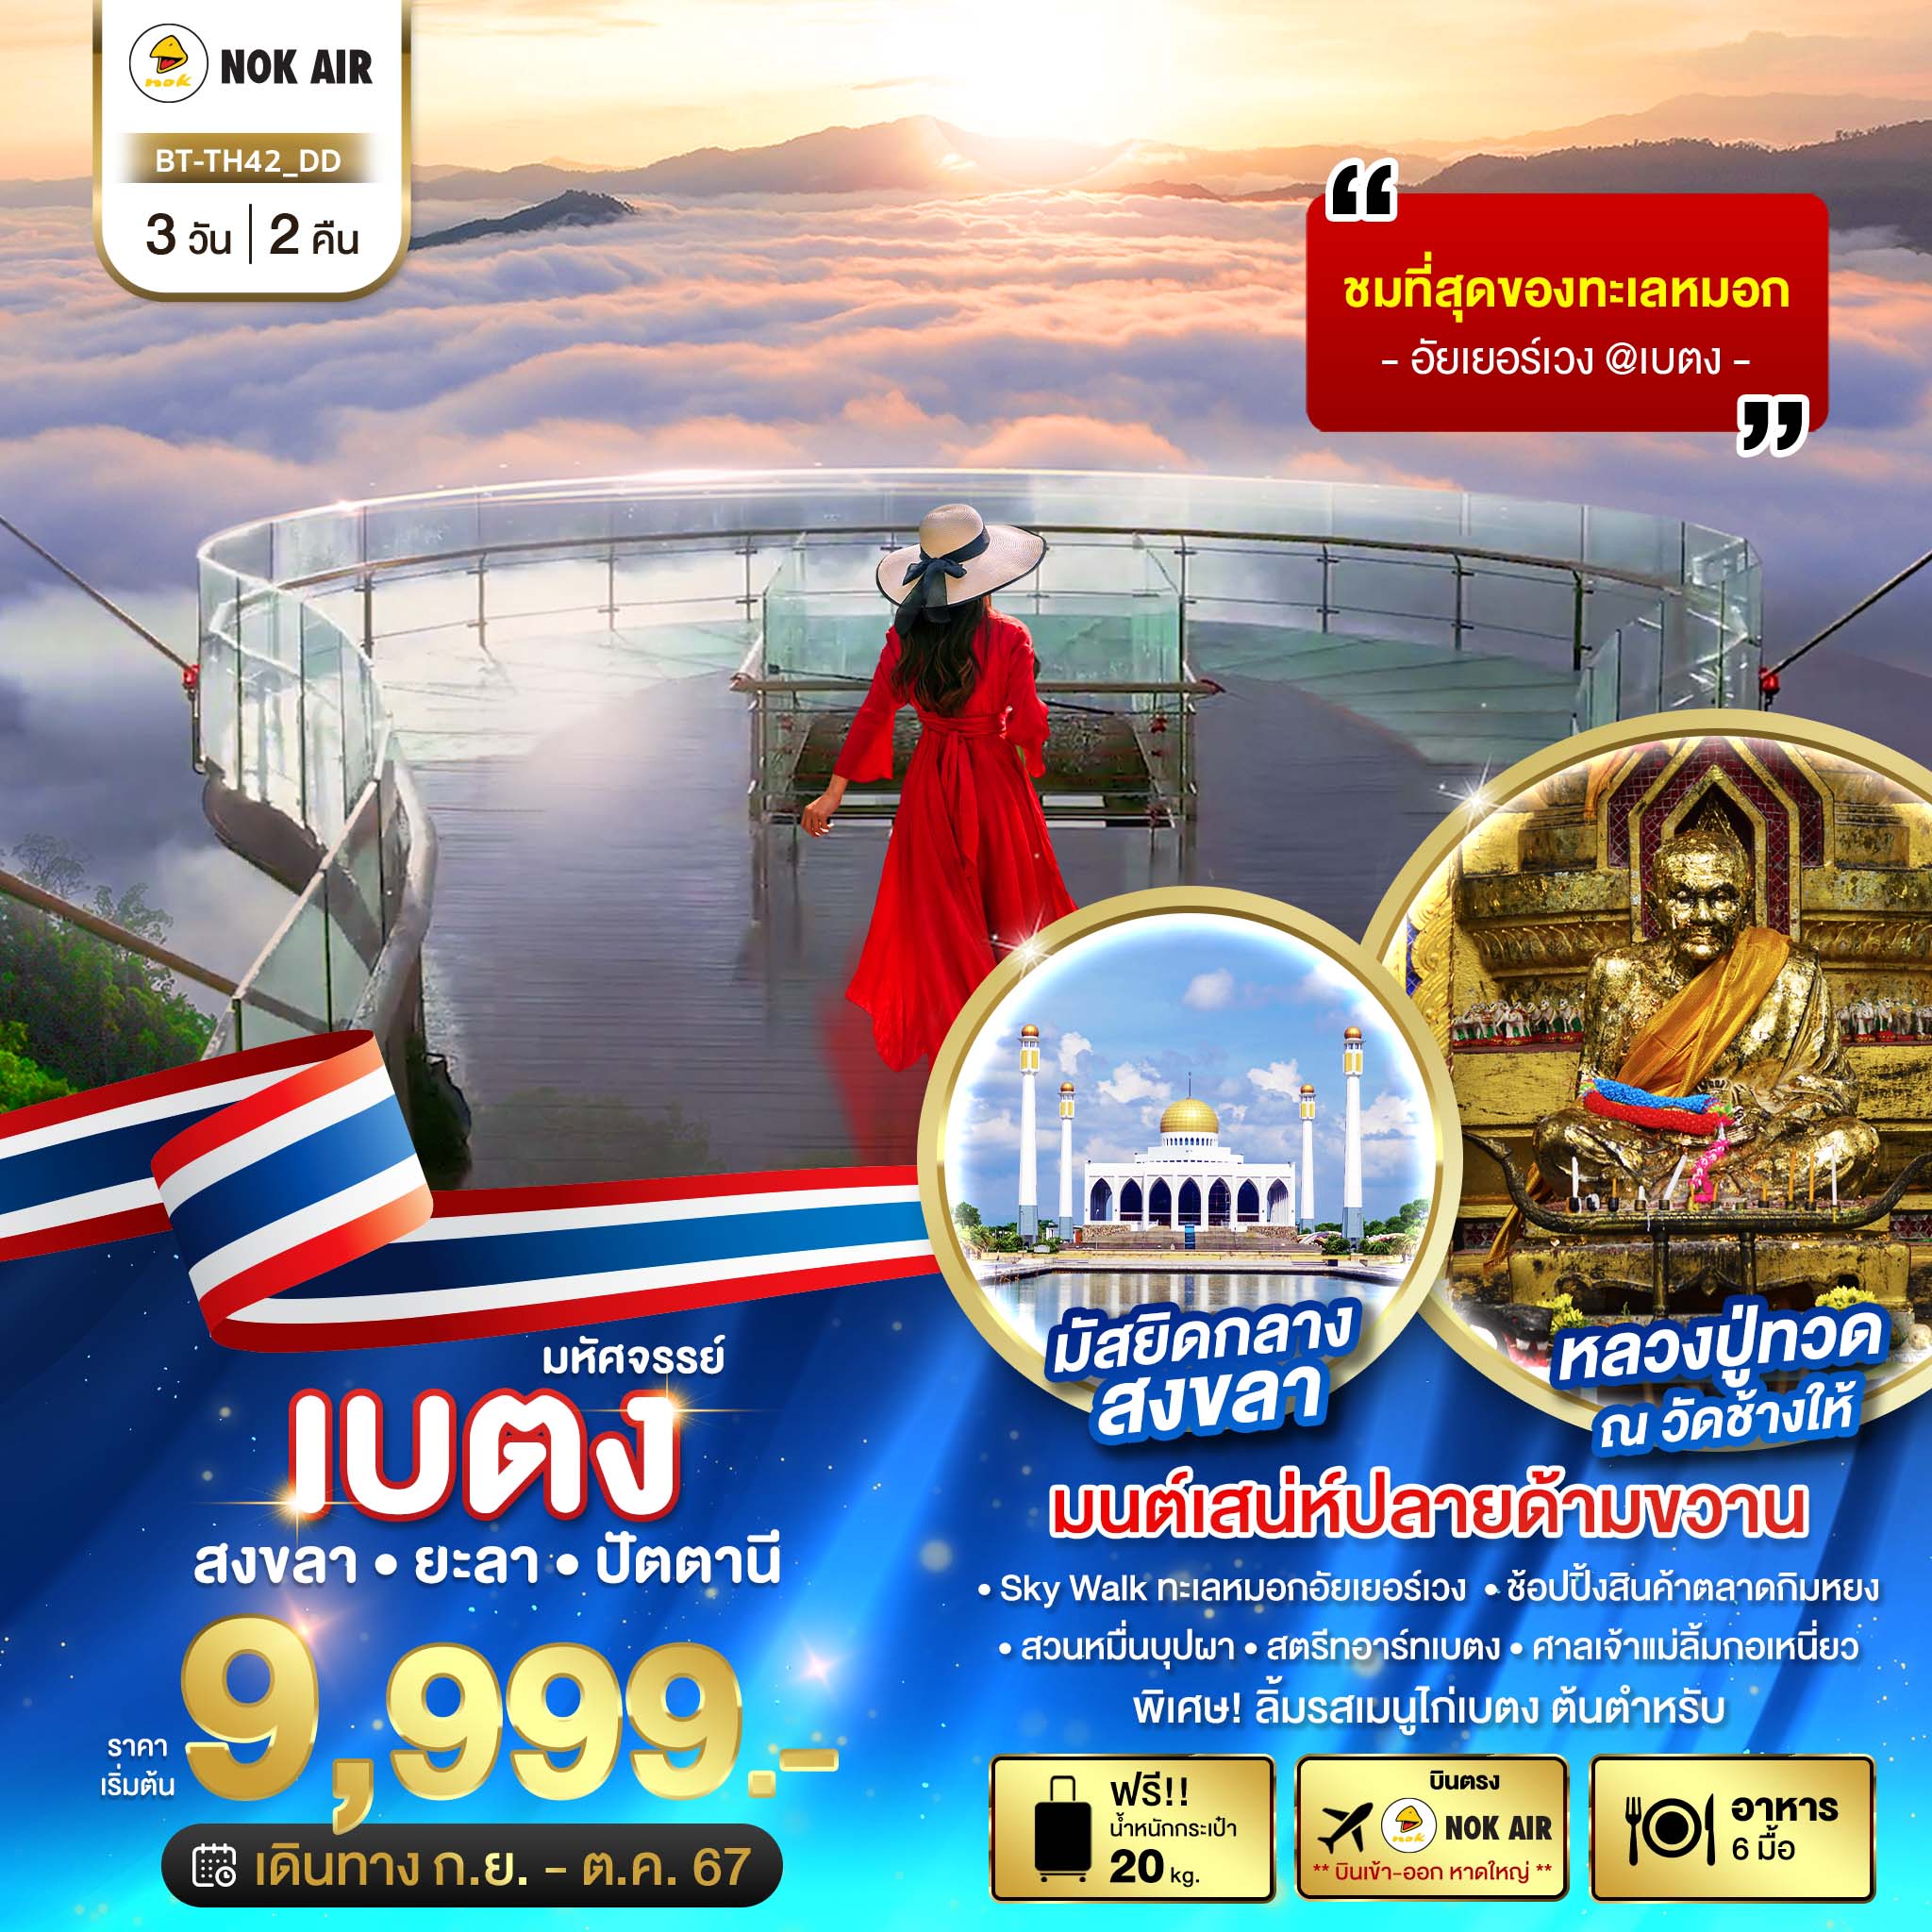 เที่ยวไทย เบตง สงขลา ยะลา ปัตตานี 3 วัน 2 คืน (DD)